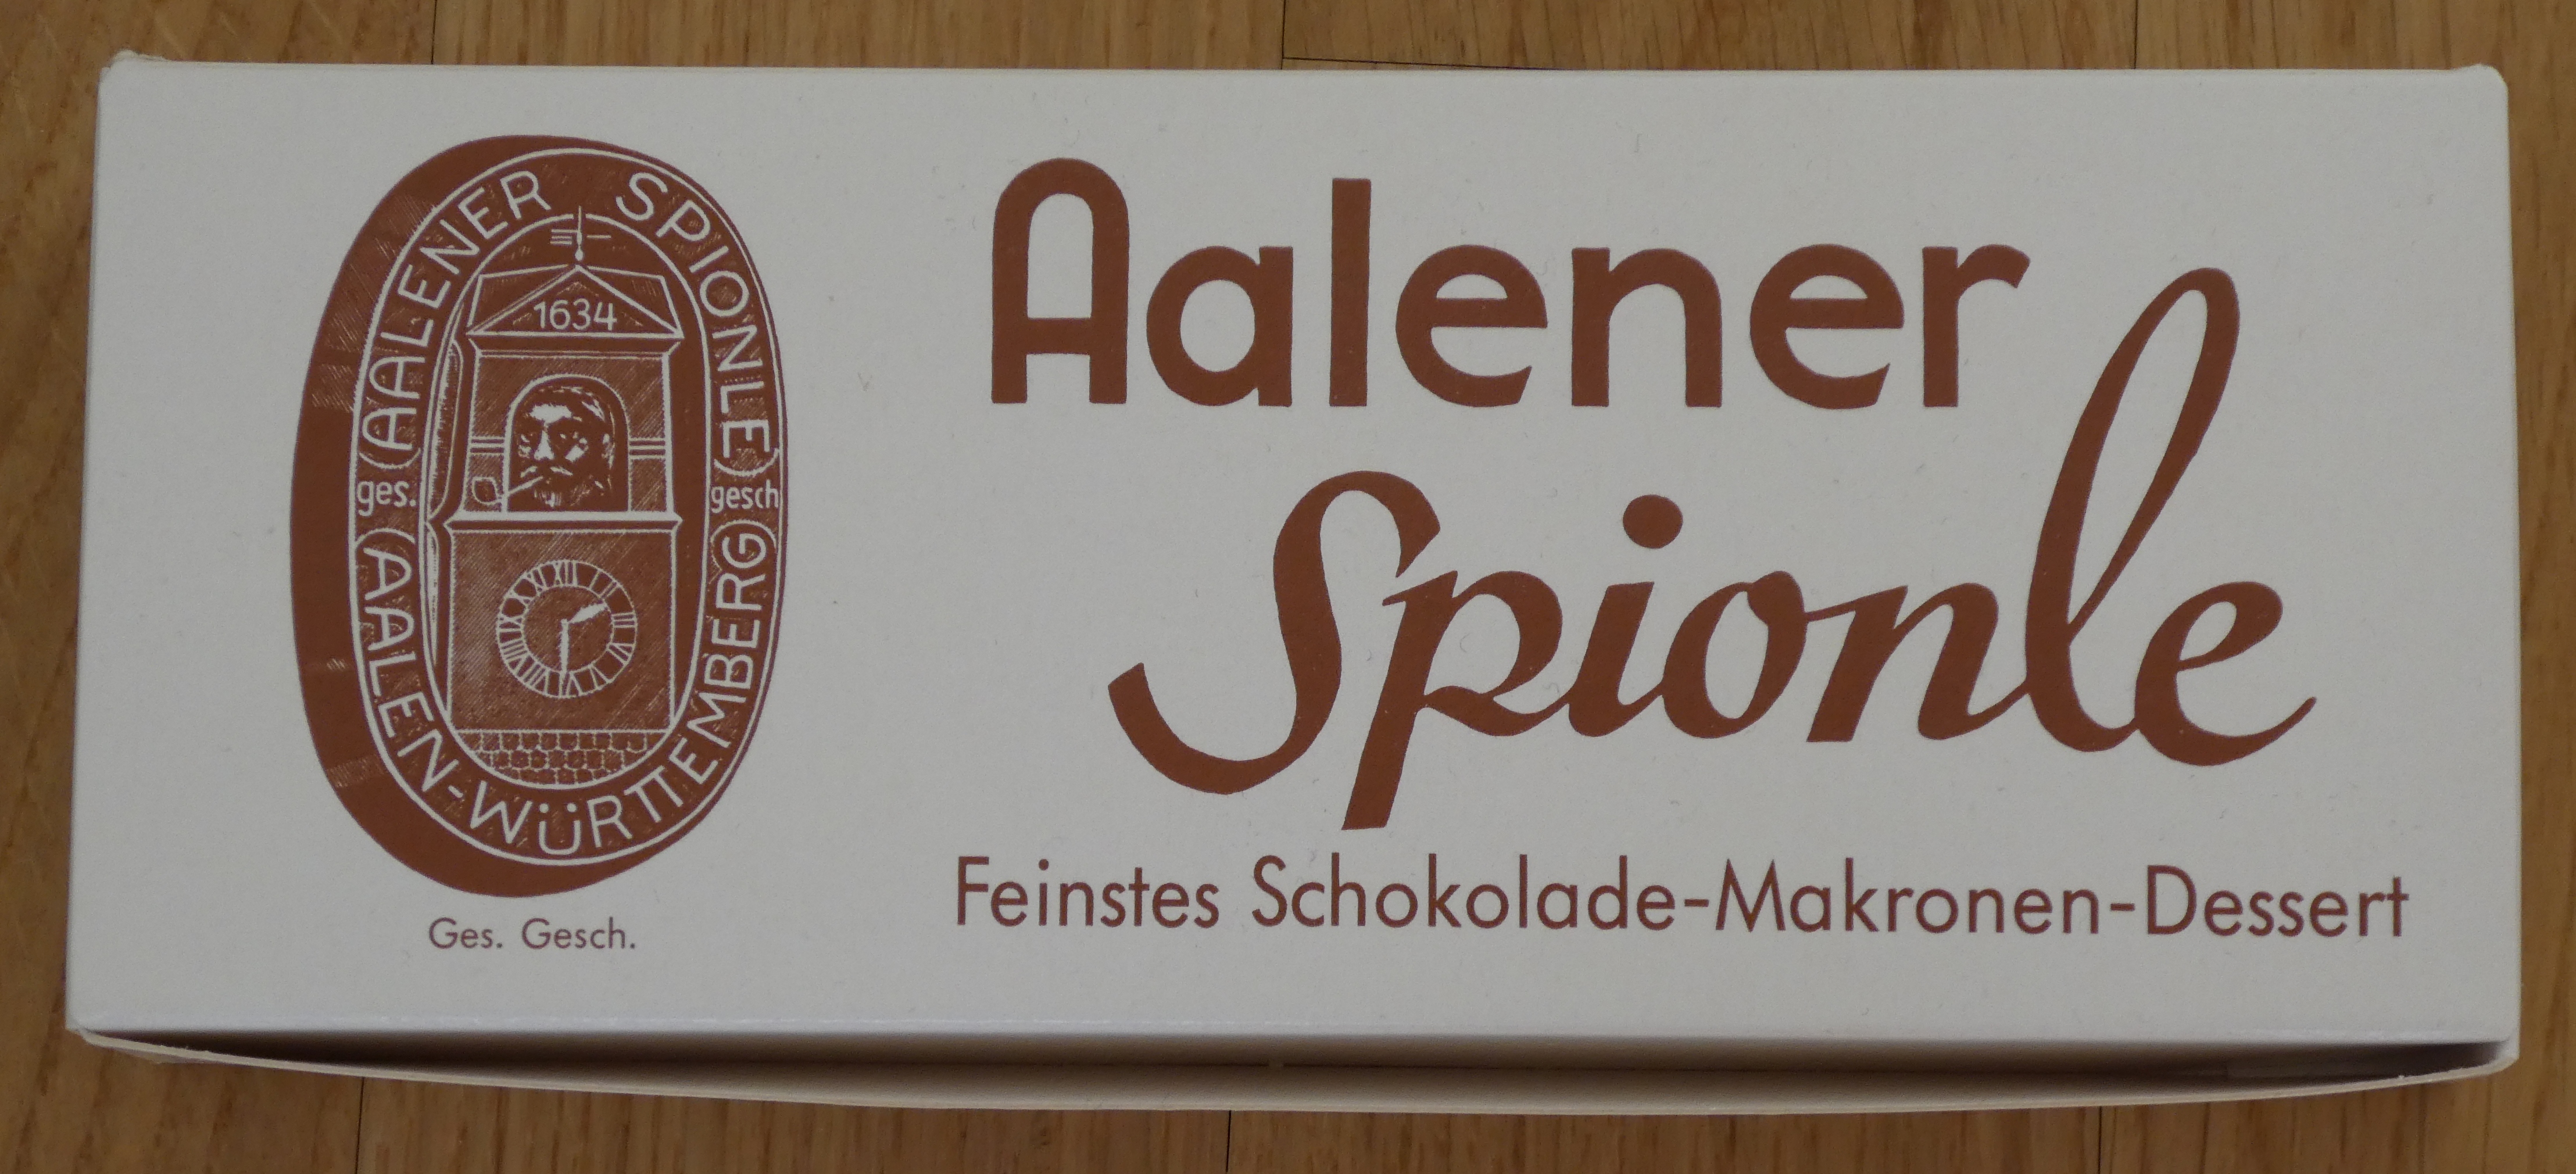 Aalener Spionle - Dessert - Verpackung.jpg